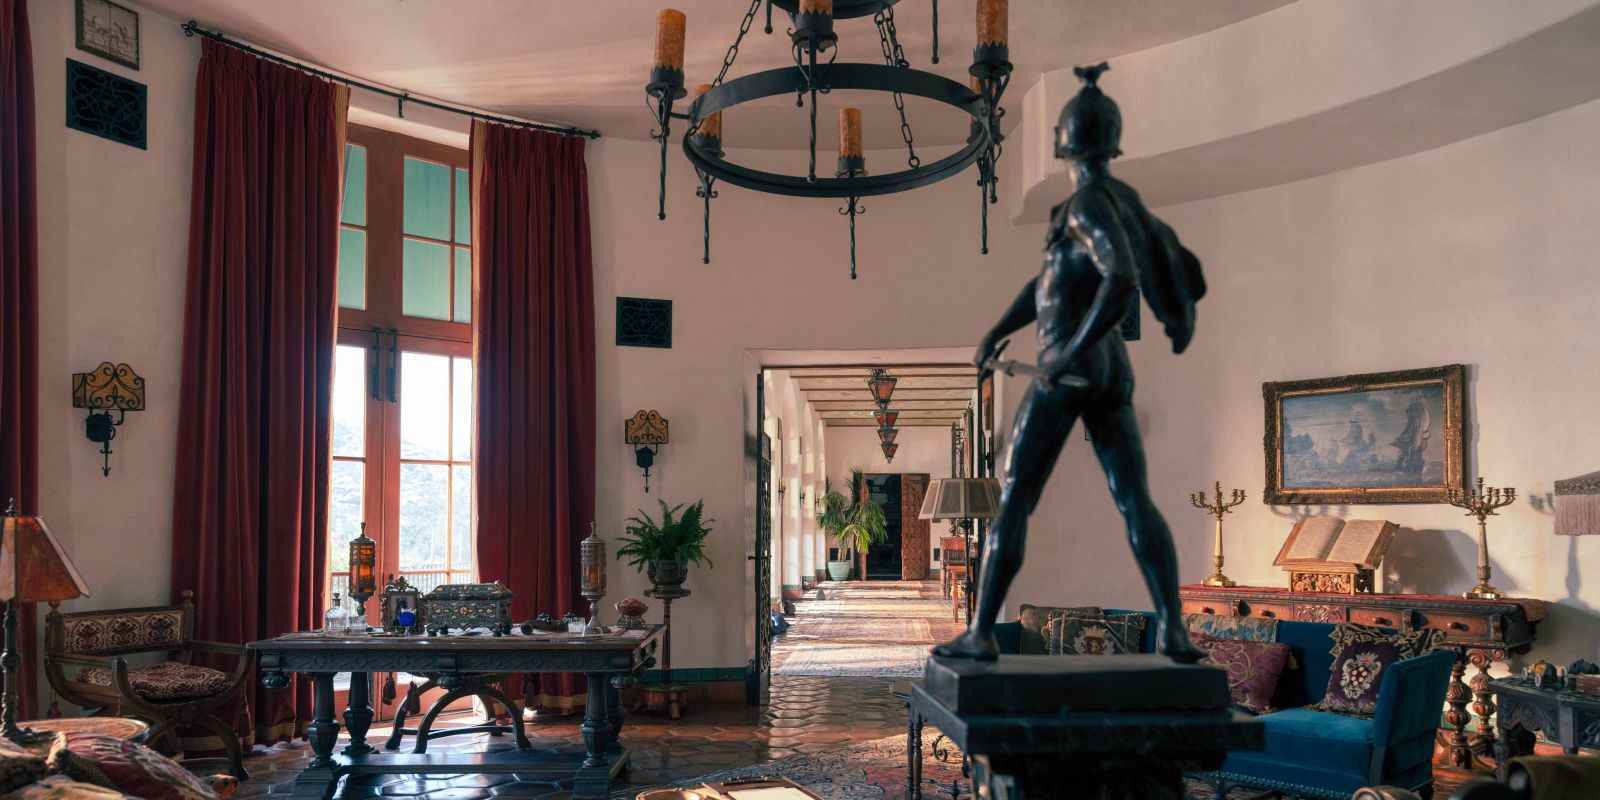 Bu görüntü, Jack Conrad'ın gösterişli heykeller ve mobilyalarla dolu malikanesini göstermektedir.